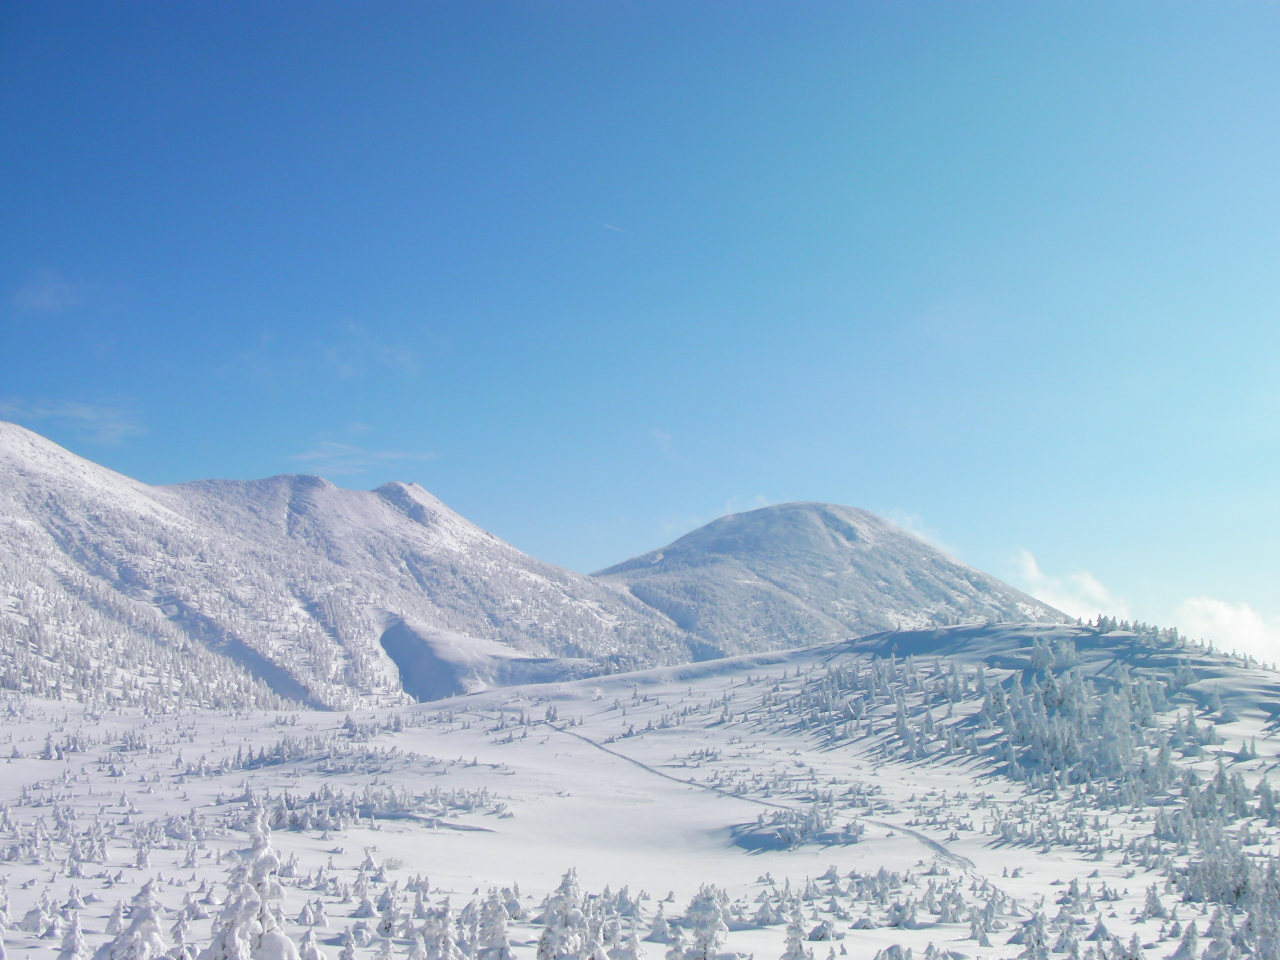 ロープウェイ山頂付近から見た冬の八甲田山（撮影者Richard Masoner、Wikipediaより20220208ダウンロード）の画像。